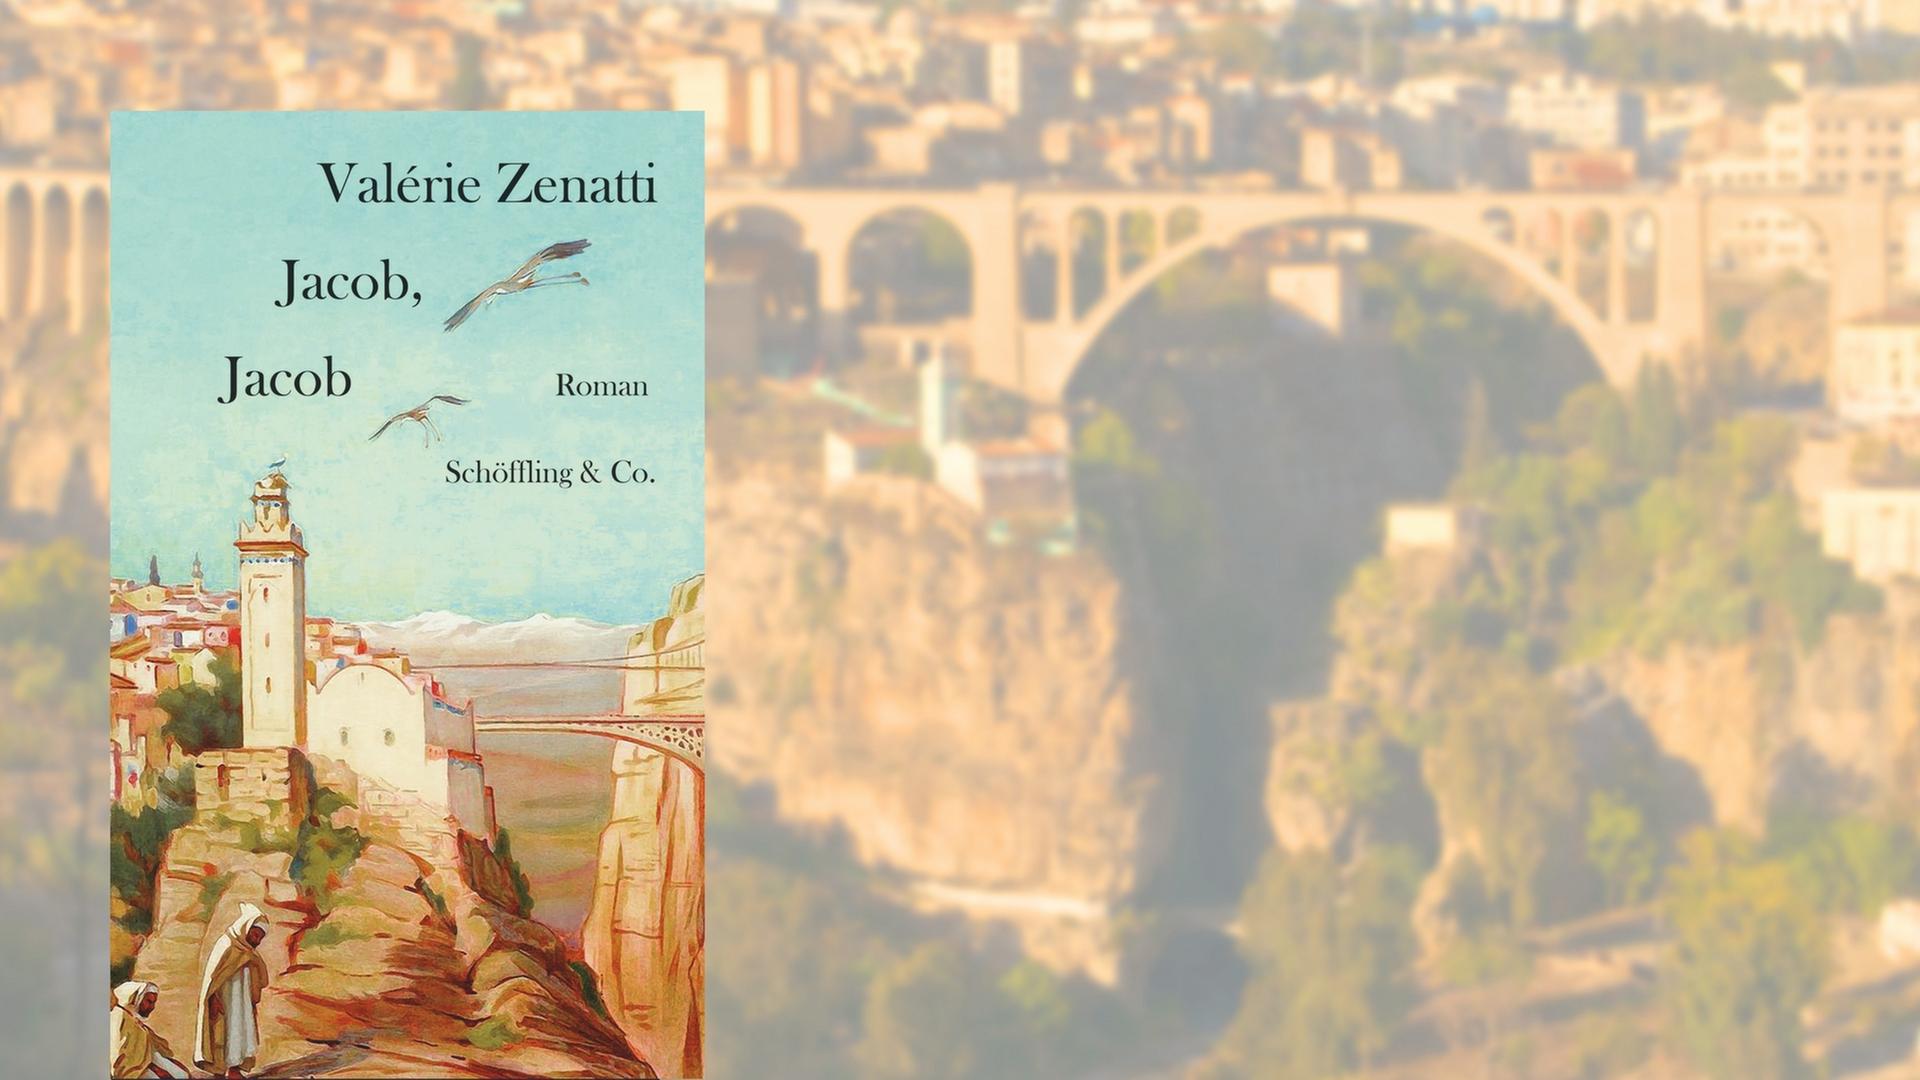 Buchcover von Jacob, Jacob vor einem Bilder der Stadt Constantine in Algerien, die auch auf dem Cover abgebildet ist.